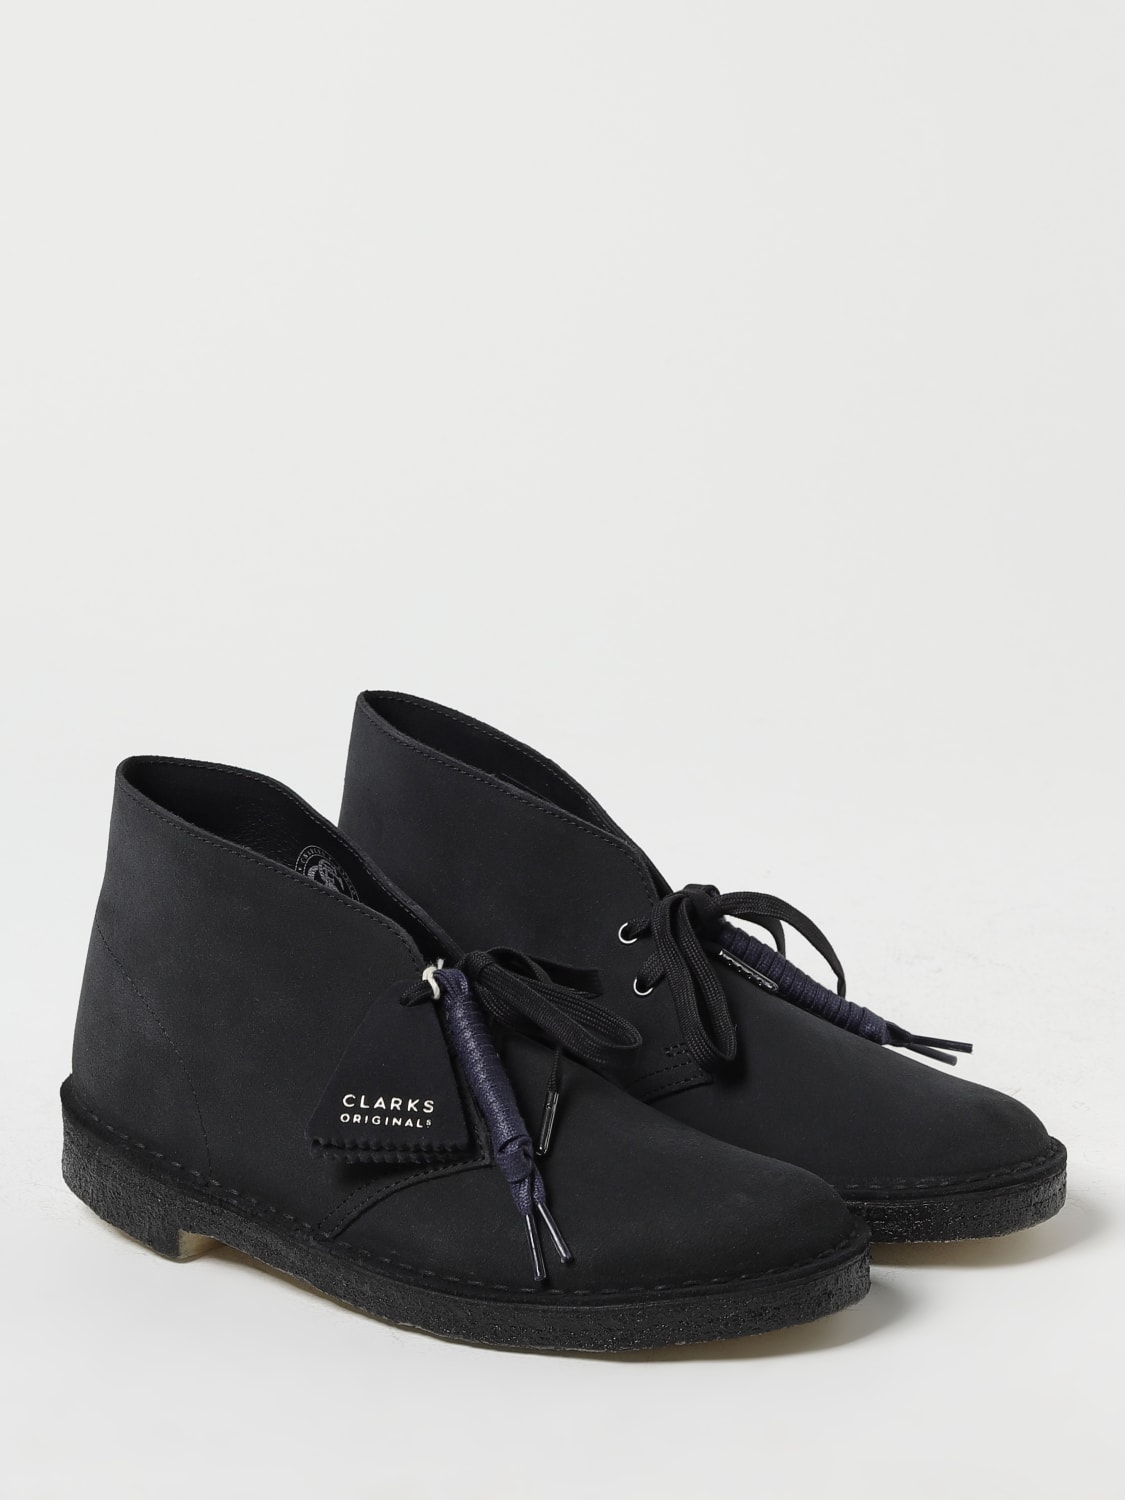 CLARKS ORIGINALS: Zapatos abotinados para hombre, Azul Oscuro  Zapatos  Abotinados Clarks Originals 26155571 en línea en